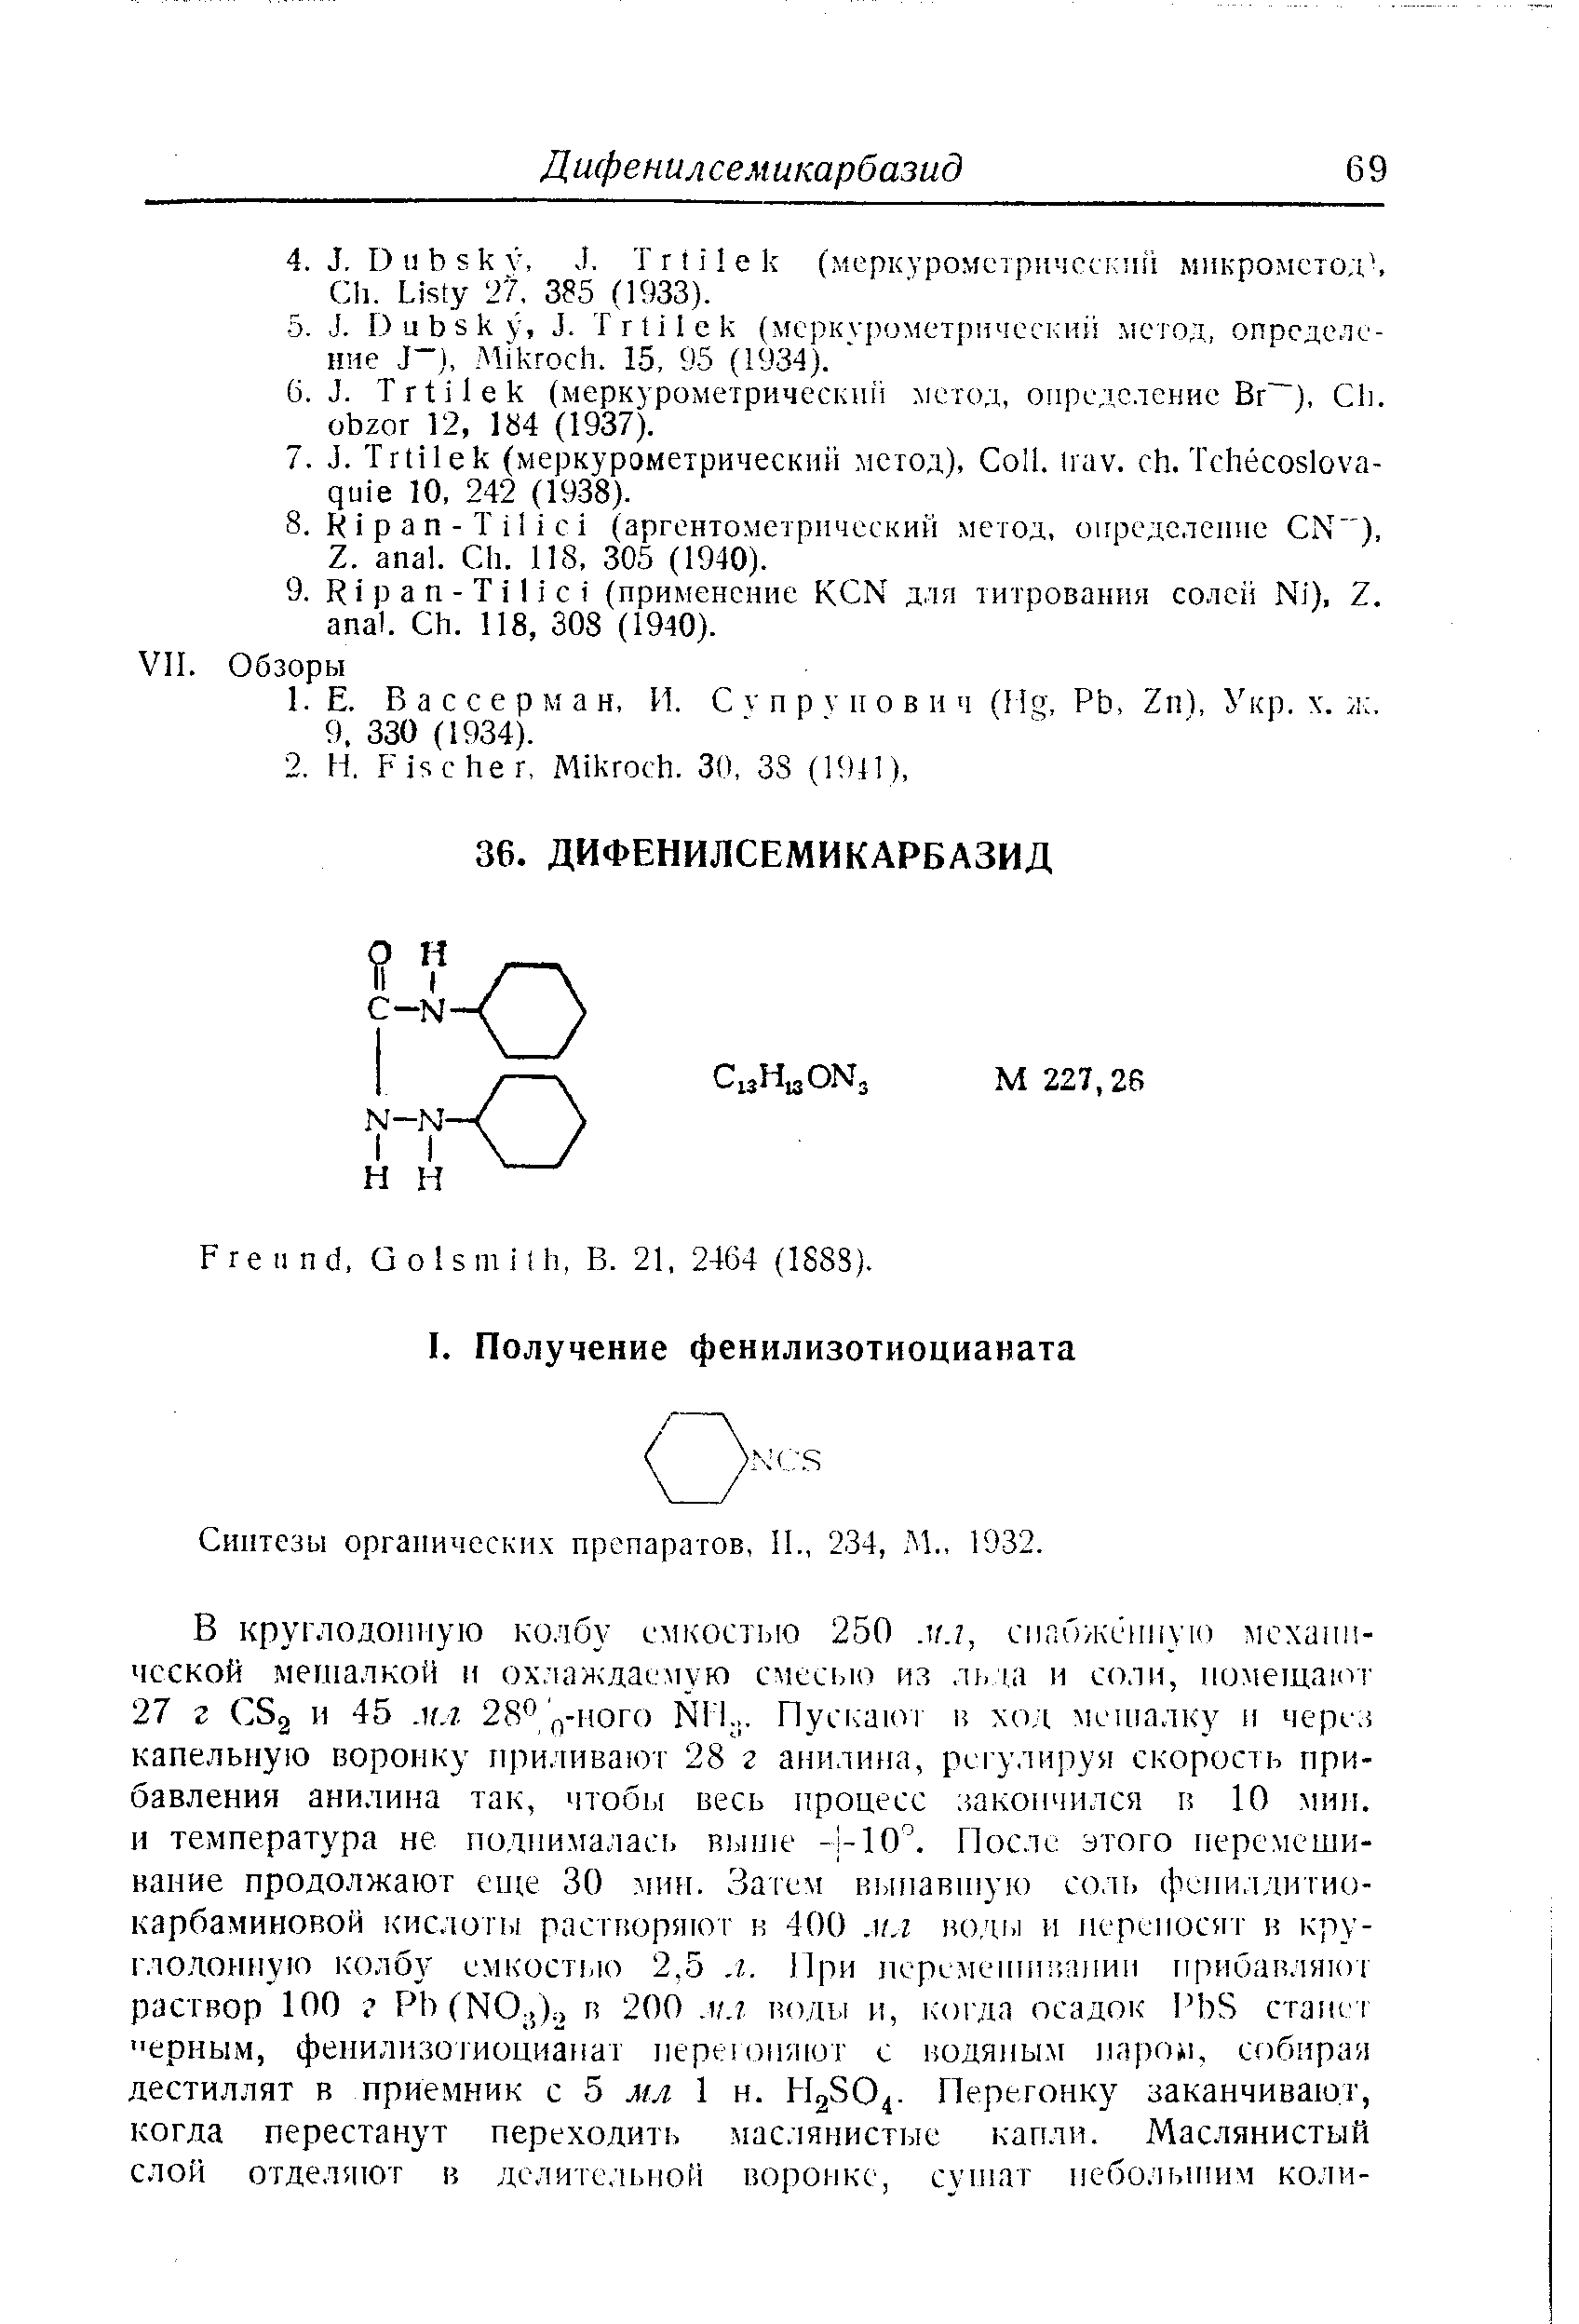 Синтезы органических препаратов, И,, 234, Л1., 1932.